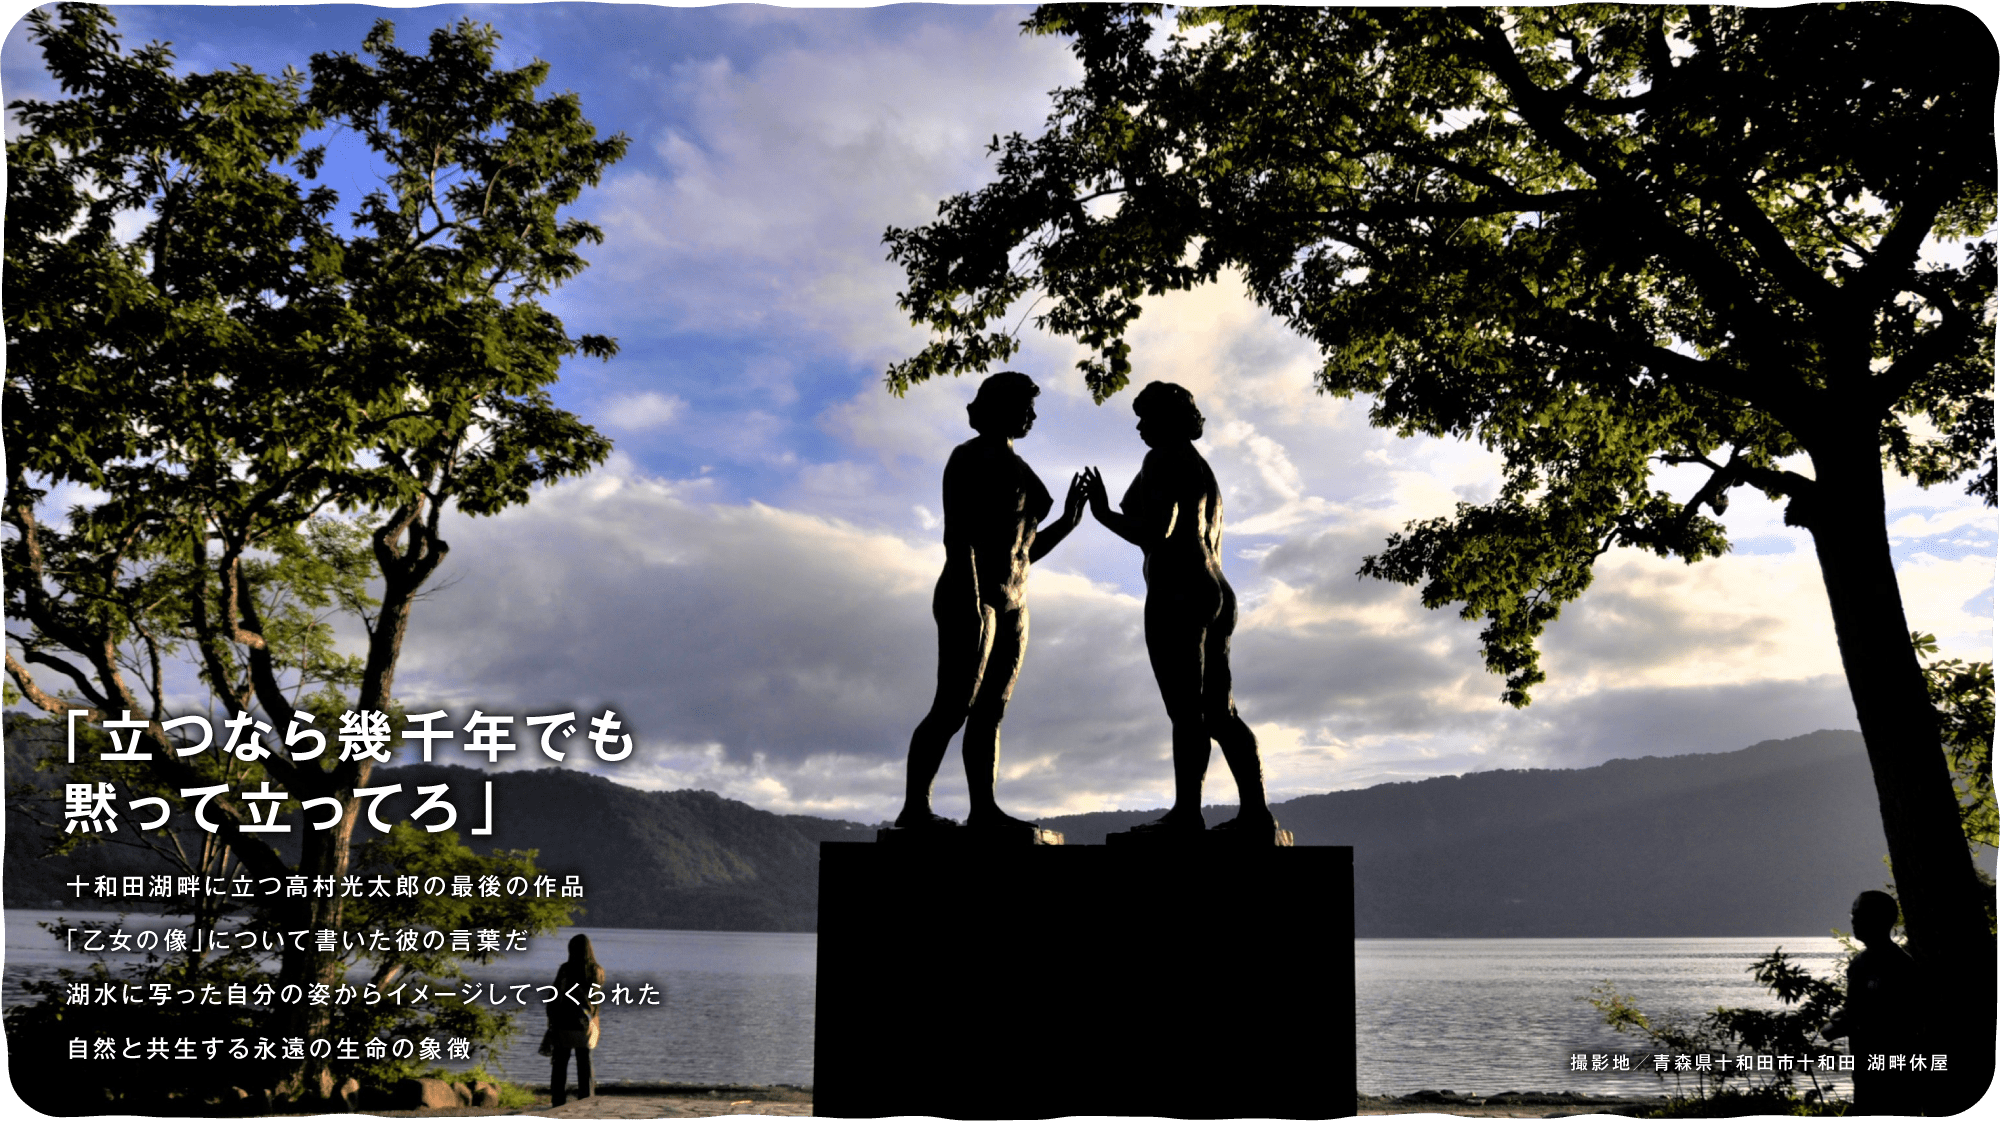 「立つなら幾千年でも黙って立ってろ」　十和田湖畔に立つ高村光太郎の最後の作品「乙女の像」について書いた彼の言葉だ 湖水に写った自分の姿からイメージしてつくられた自然と共生する永遠の生命の象徴